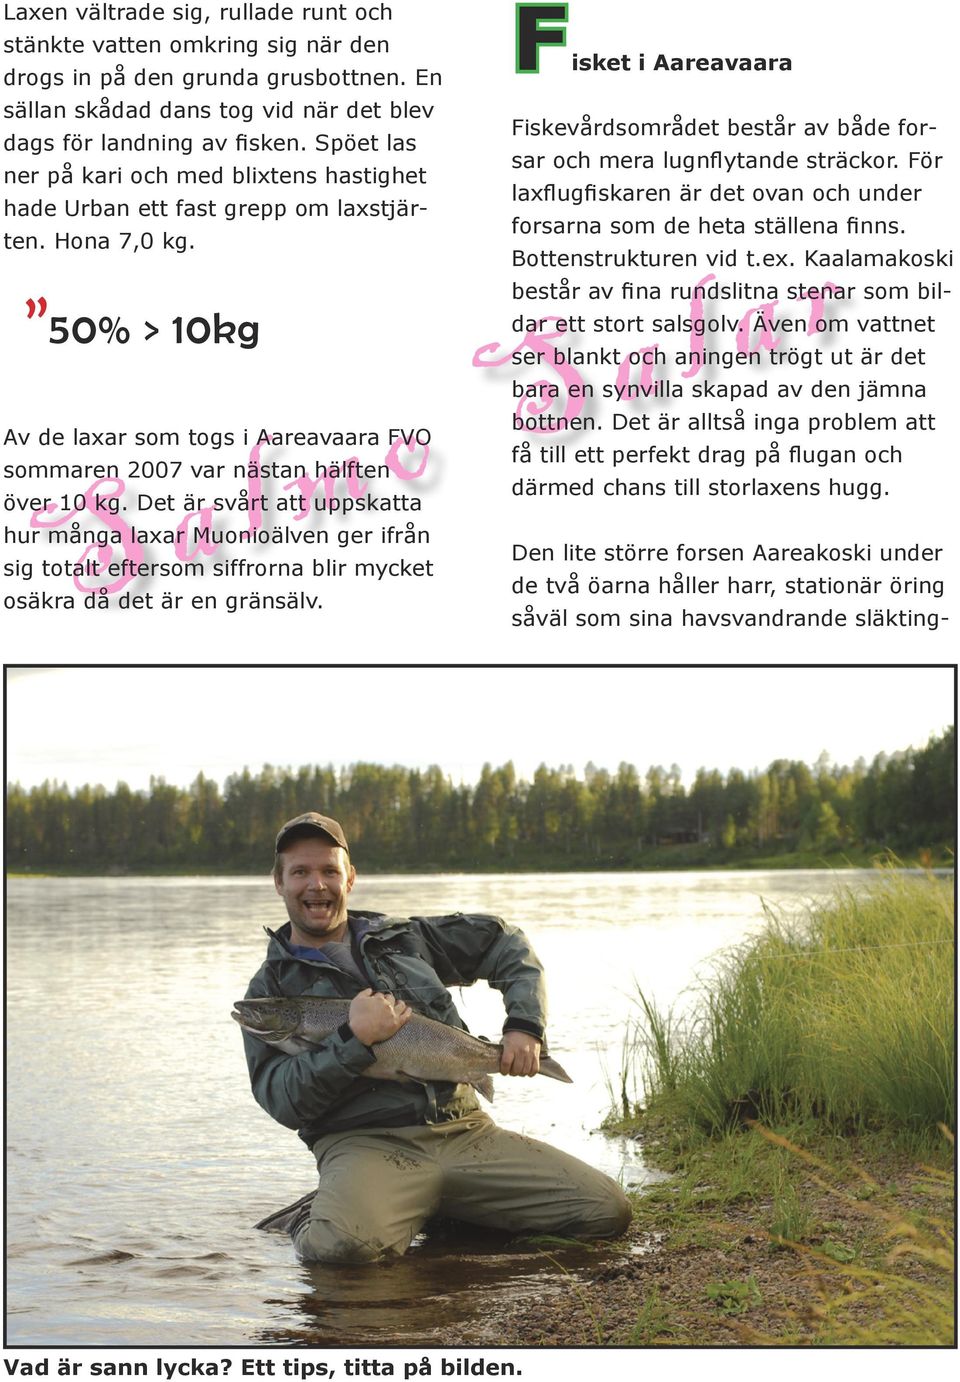 50% > 10kg Av de laxar som togs i Aareavaara FVO sommaren 2007 var nästan hälften Fisket i Aareavaara Fiskevårdsområdet består av både forsar och mera lugnflytande sträckor.